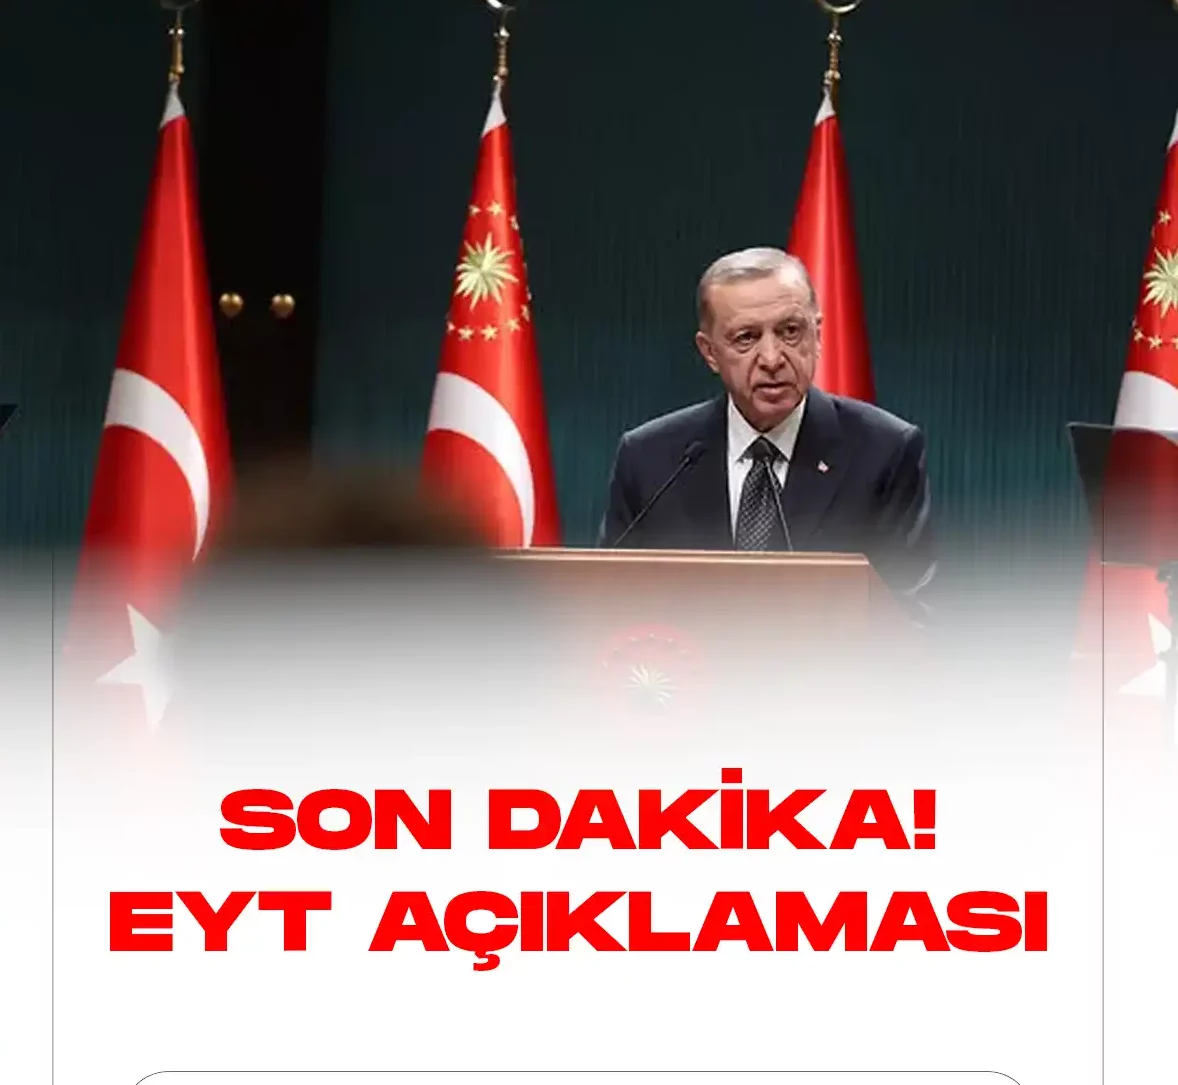 AK Parti Genel Başkanı ve Cumhurbaşkanı Recep Tayyip Erdoğan, emeklilikte yaşa takılanlar (EYT) düzenlemesine ilişkin son dakika açıklamalarında bulundu.